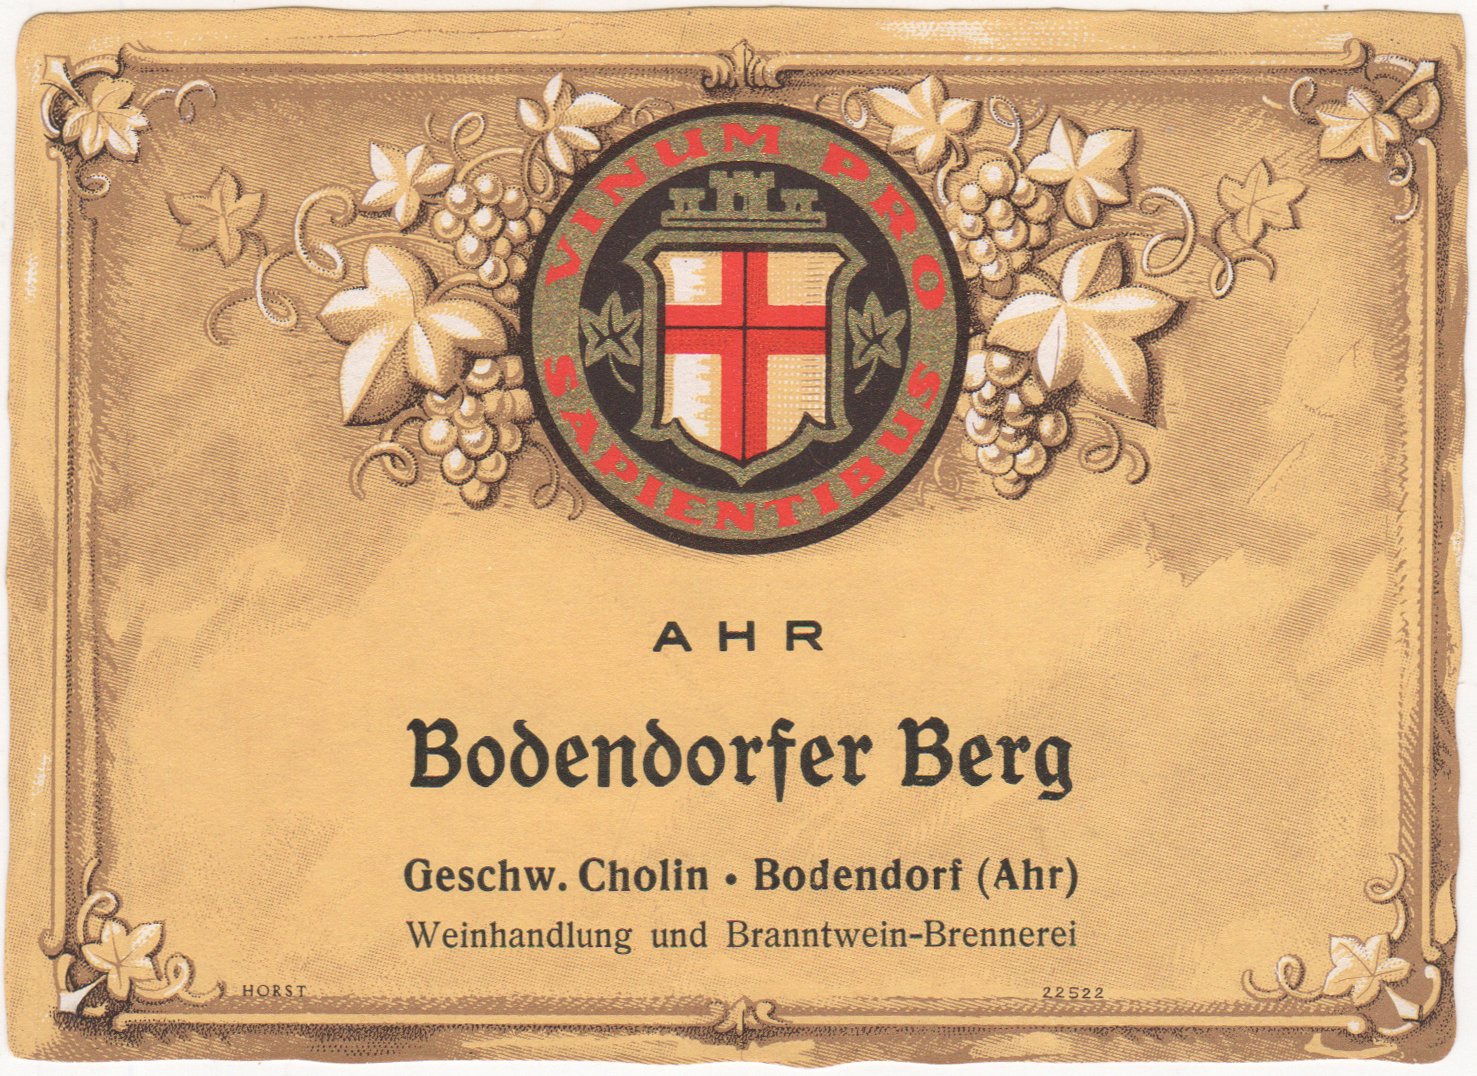 Weinflaschenetikett "Bodendorfer Berg" der Geschwister Cholin, Bodendorf/Ahr bis 1968 (Heimatarchiv Bad Bodendorf CC BY-NC-SA)